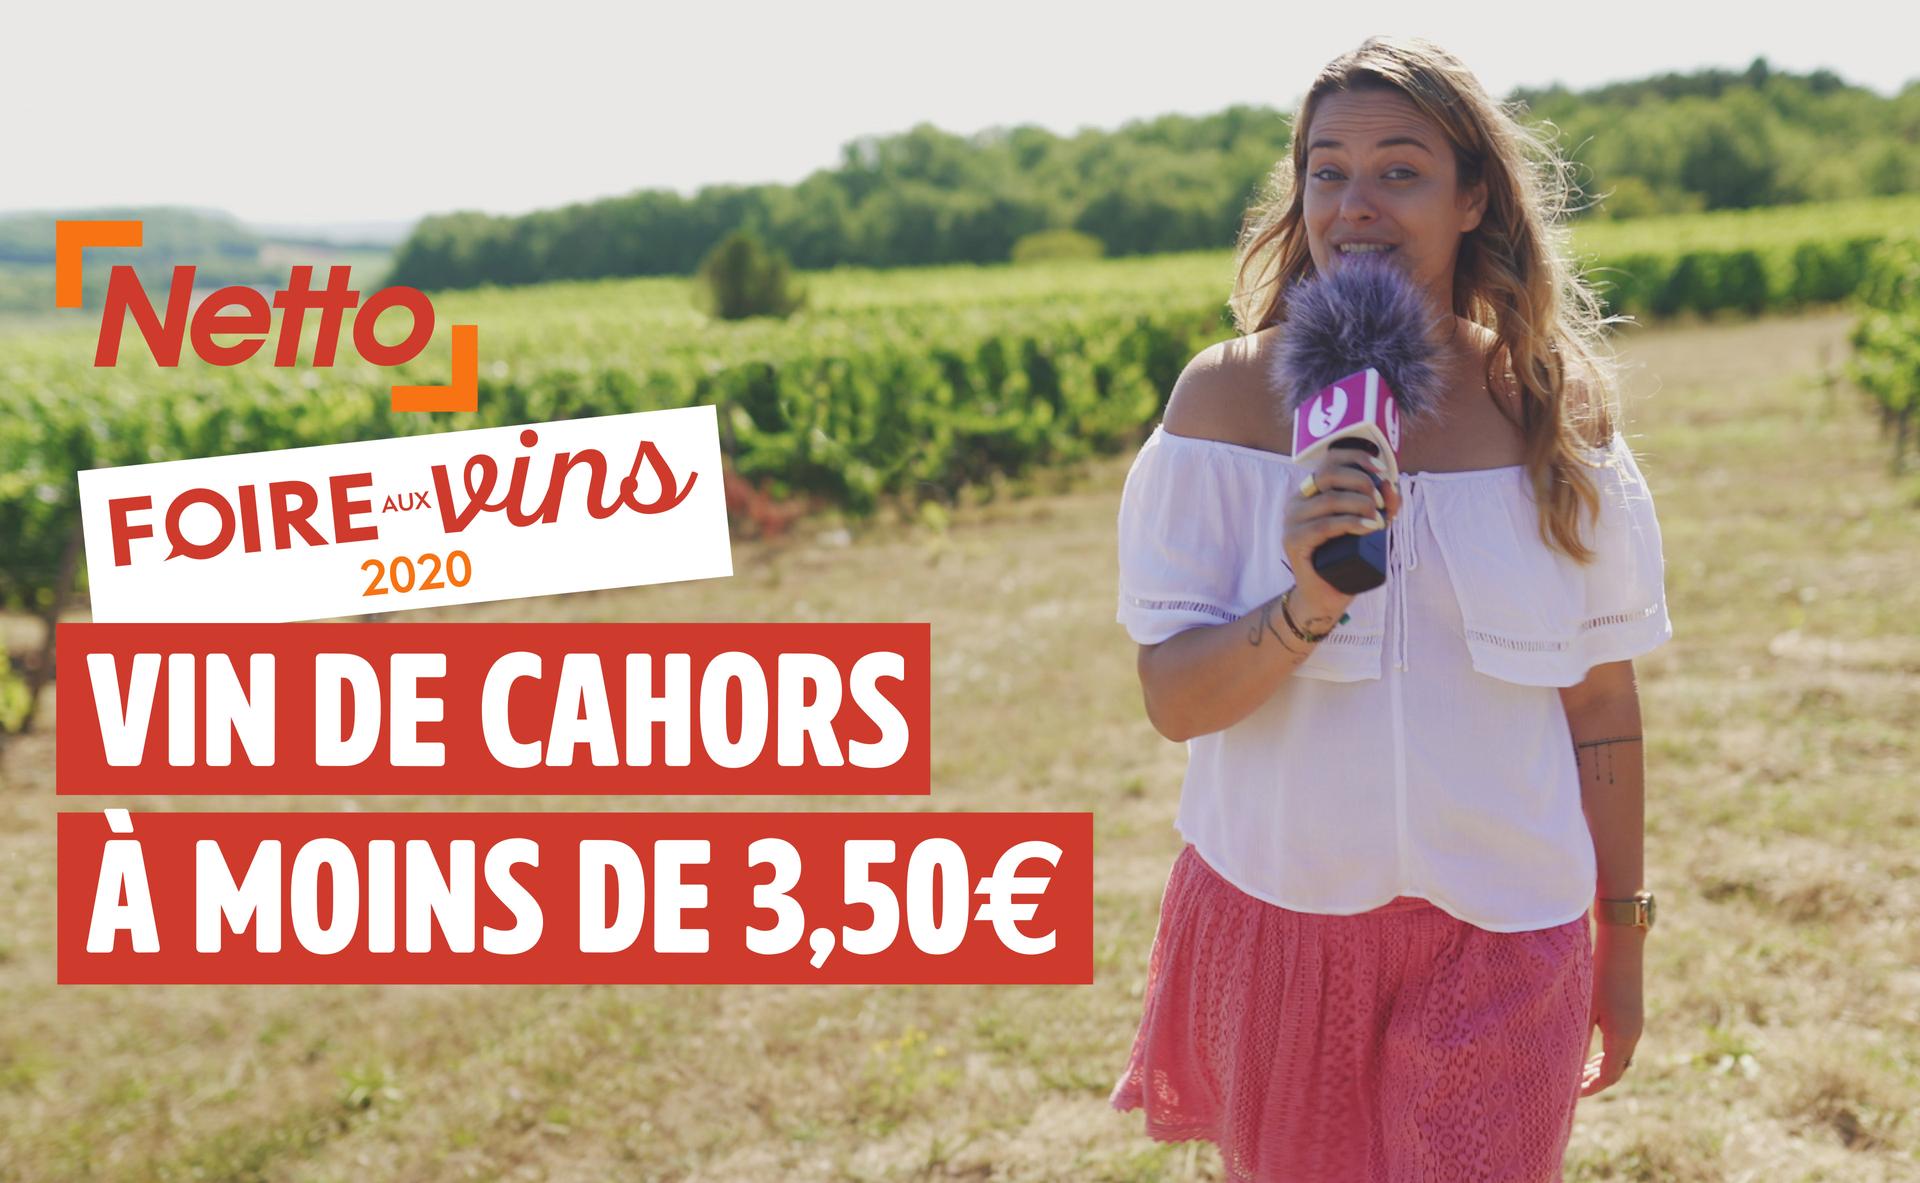 Foire aux vins 2020 : AOP Cahors